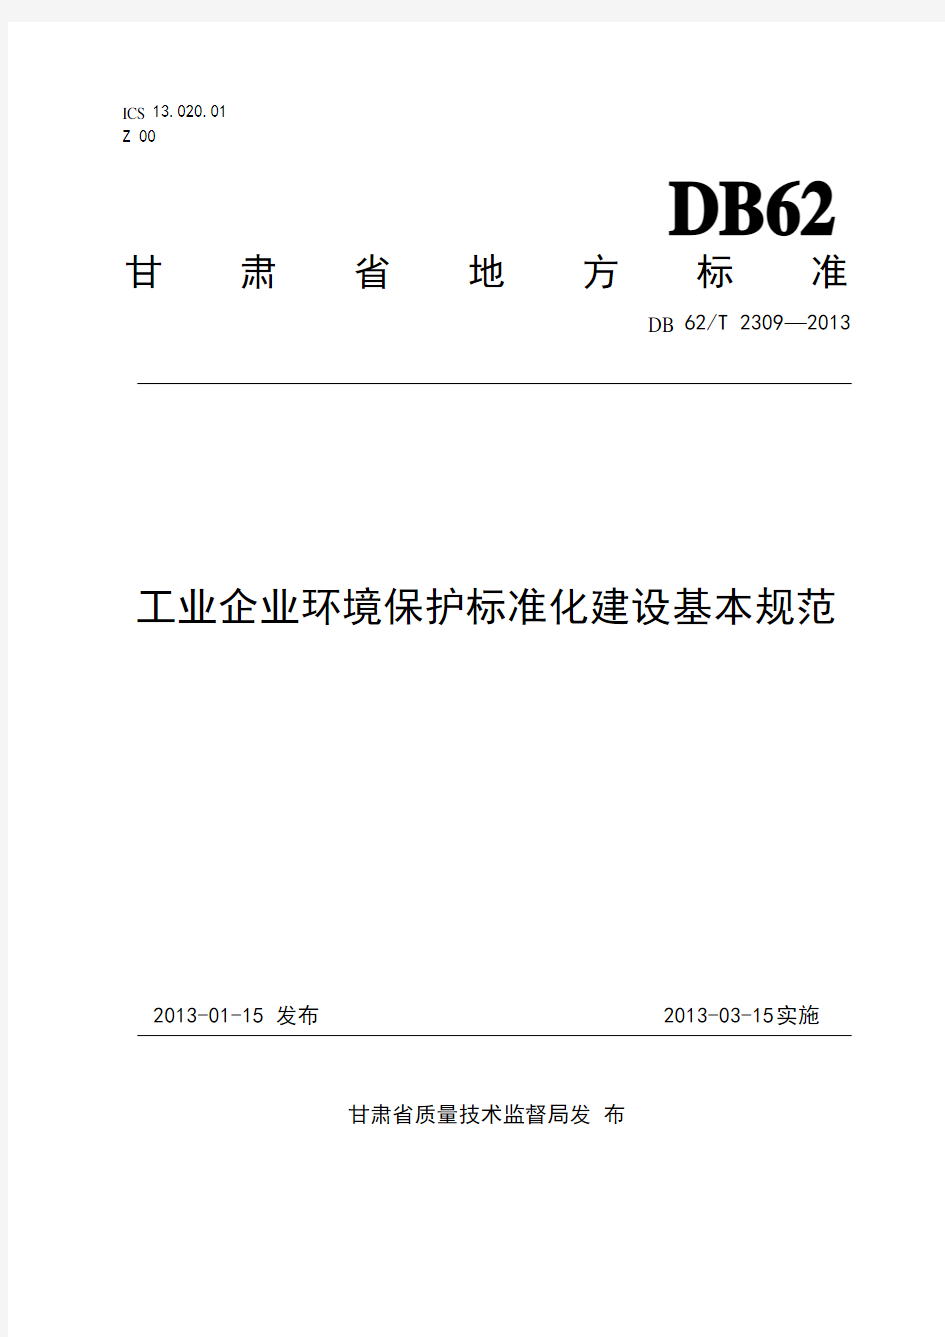 4、《工业企业环境保护标准化建设基本规范》(DB62T 2309-2013)